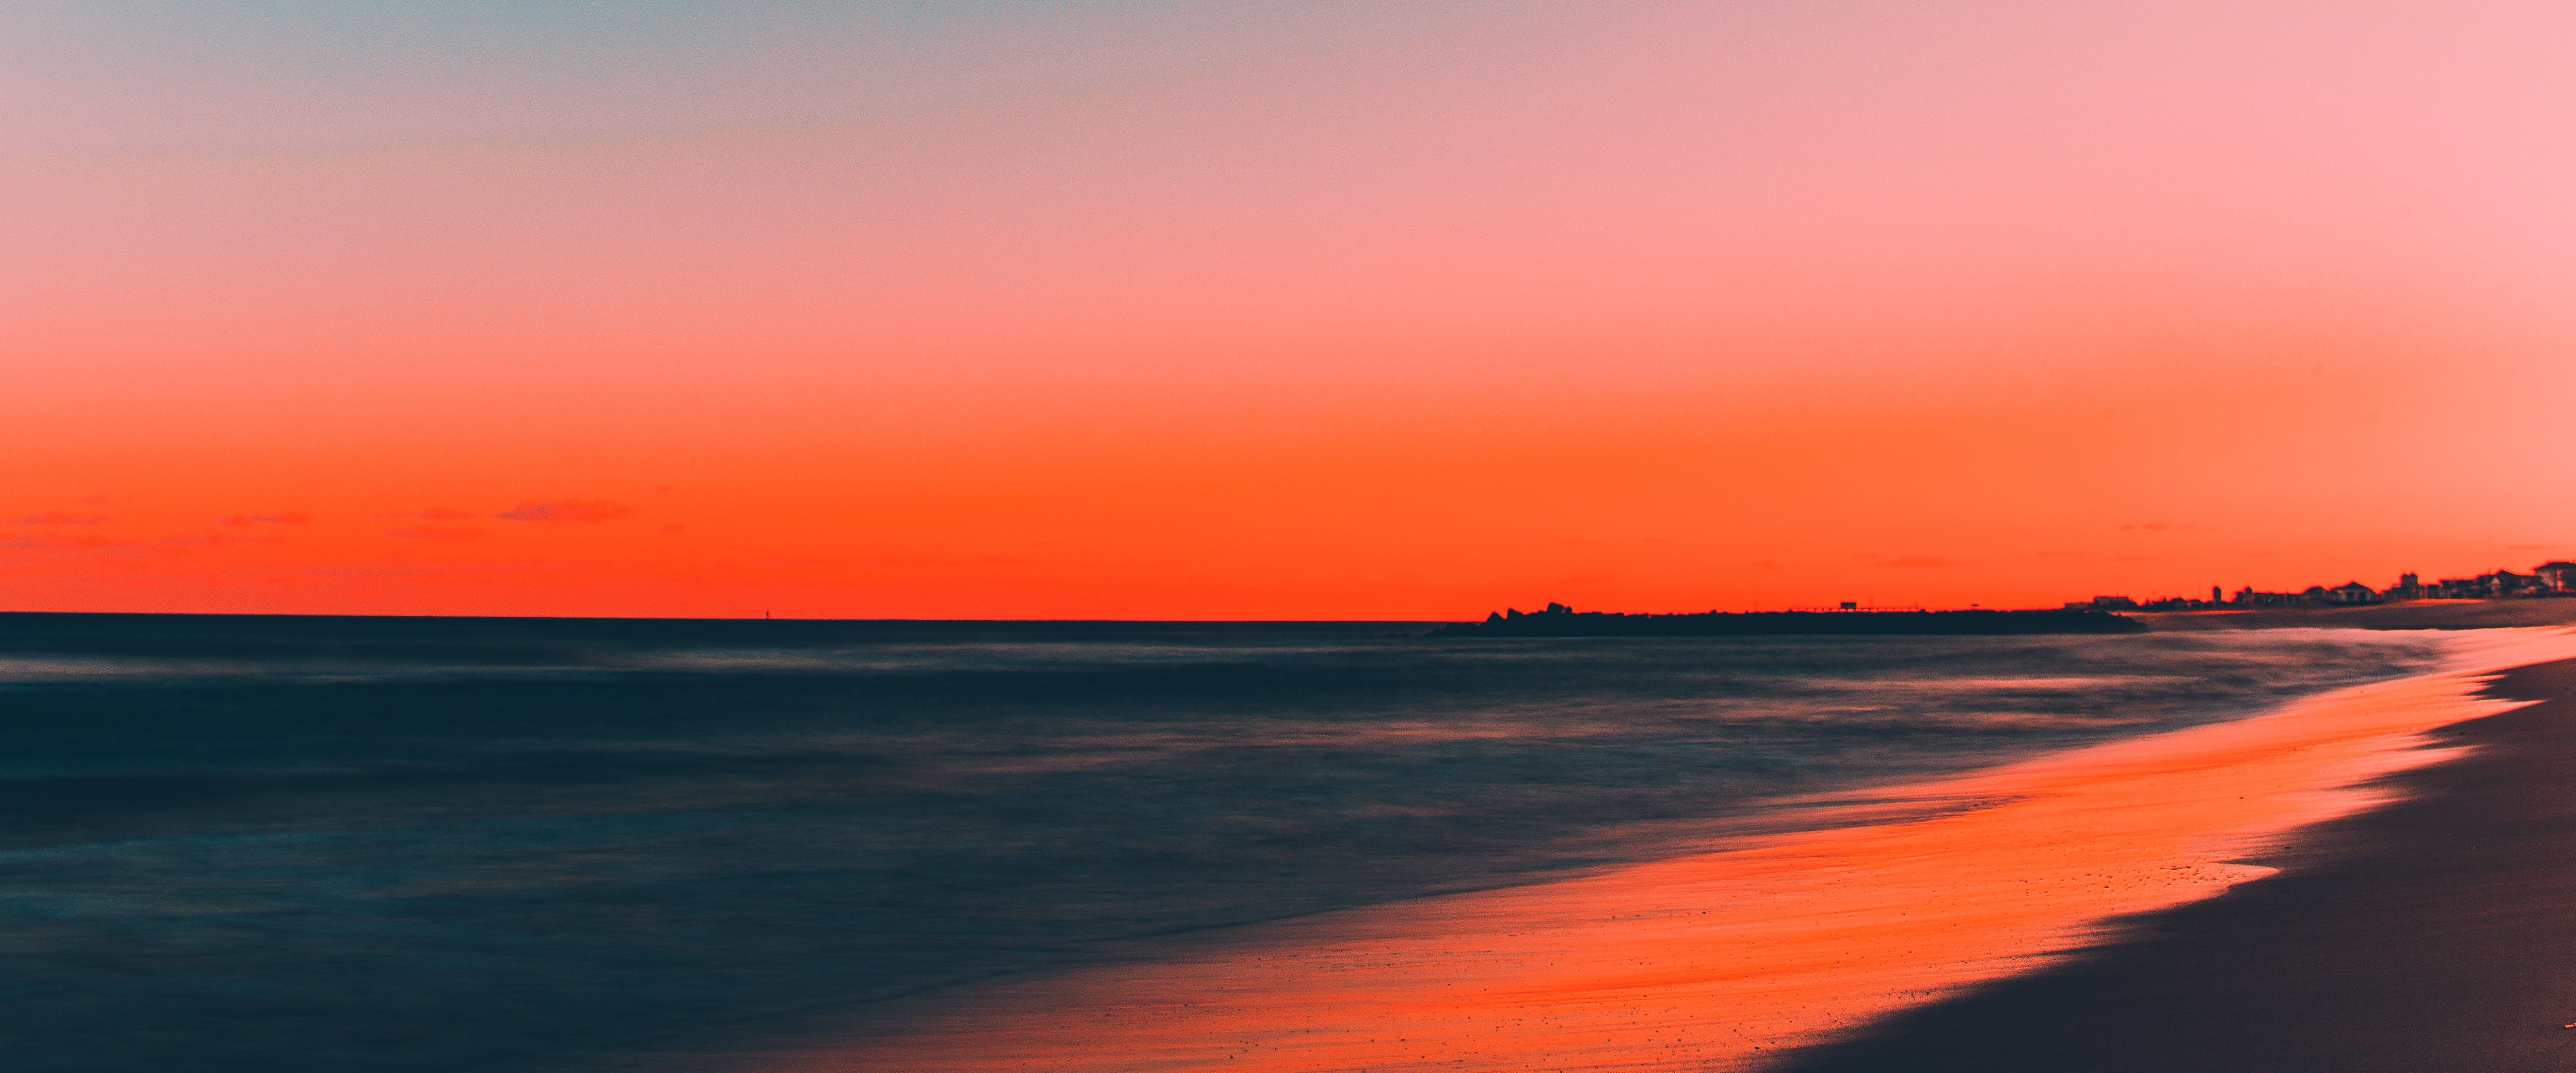 Sunset Beach Sea Horizon Scenery 8K Wallpapers